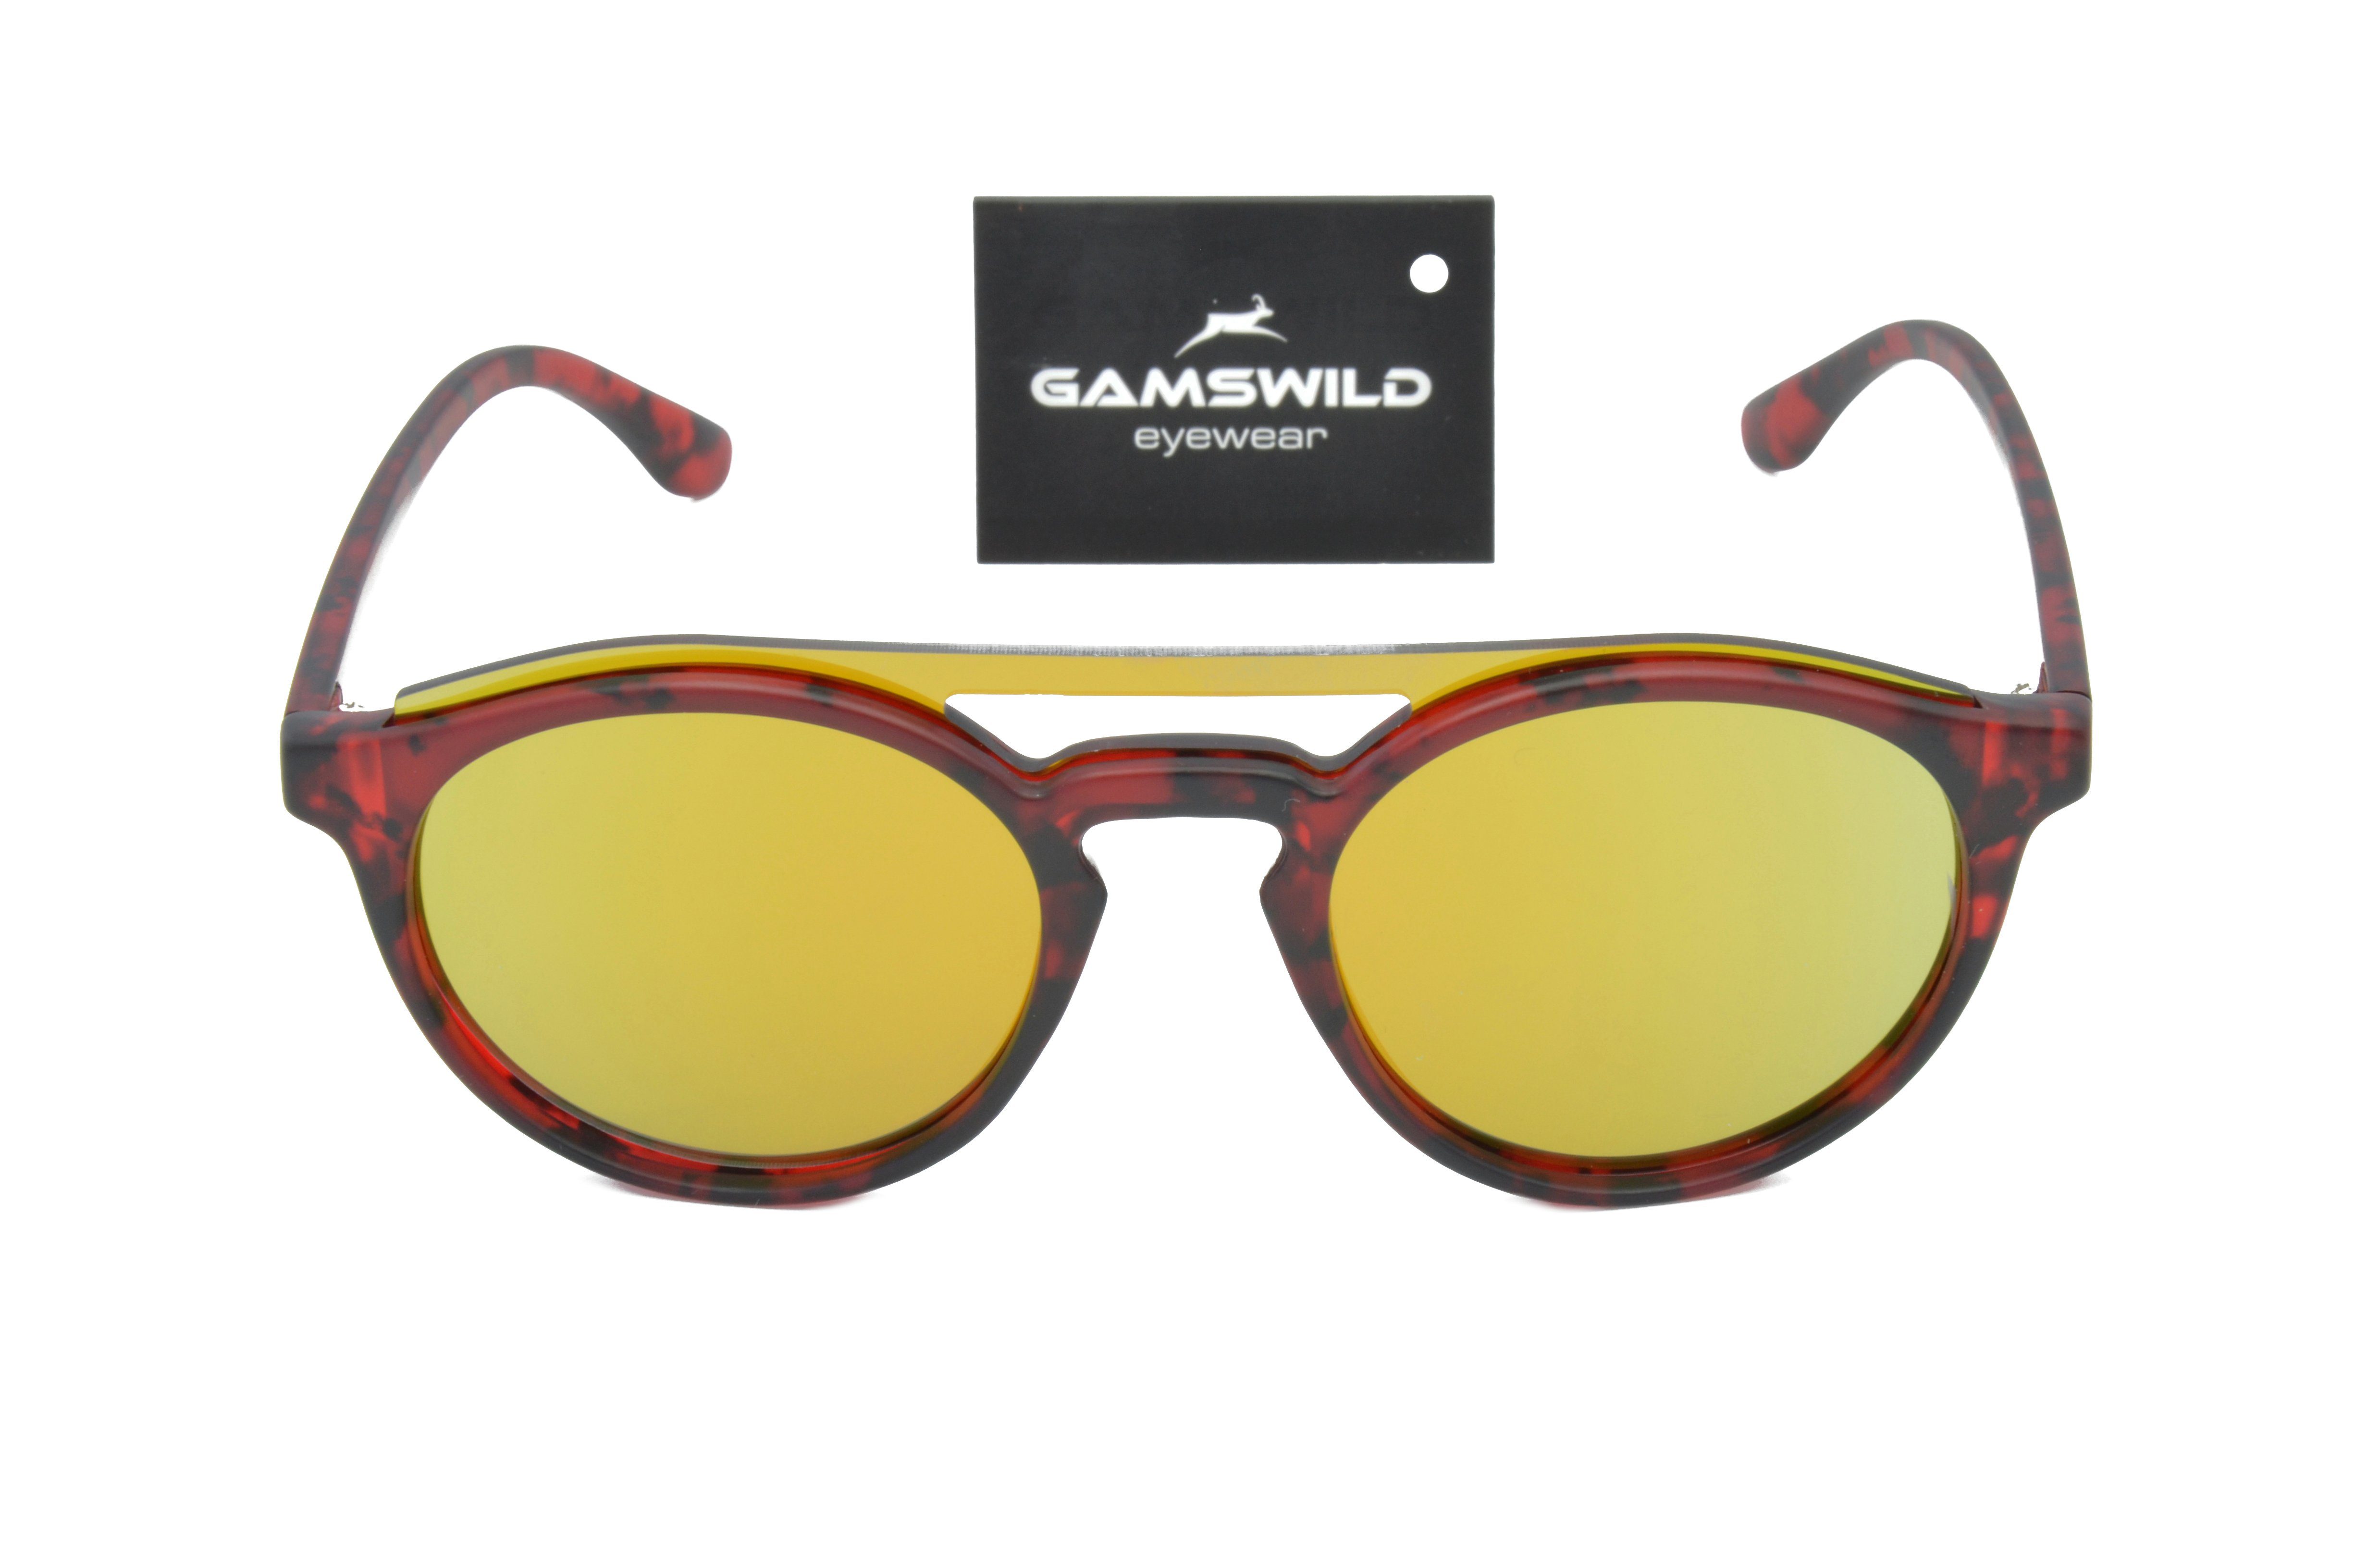 Gamswild GAMSSTYLE grün, Unisex rot blau, Damen WM1221 Brille Fashionbrille, Sonnenbrille braun Herren Mode grün,